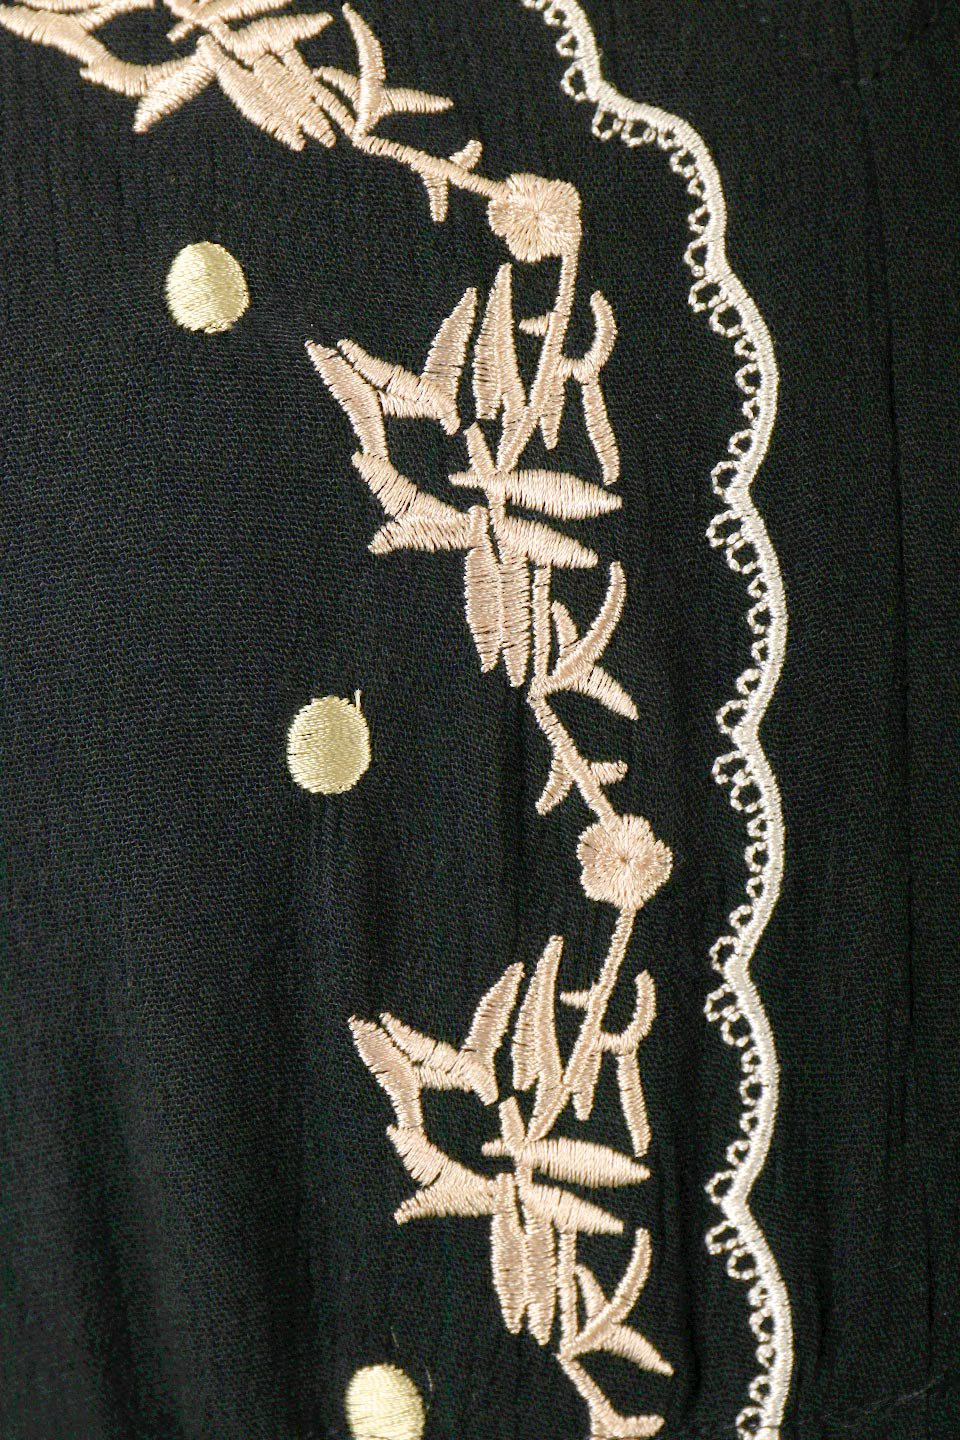 ボヘミアン モード インポート エキゾチック刺繍レースノースリワンピ 